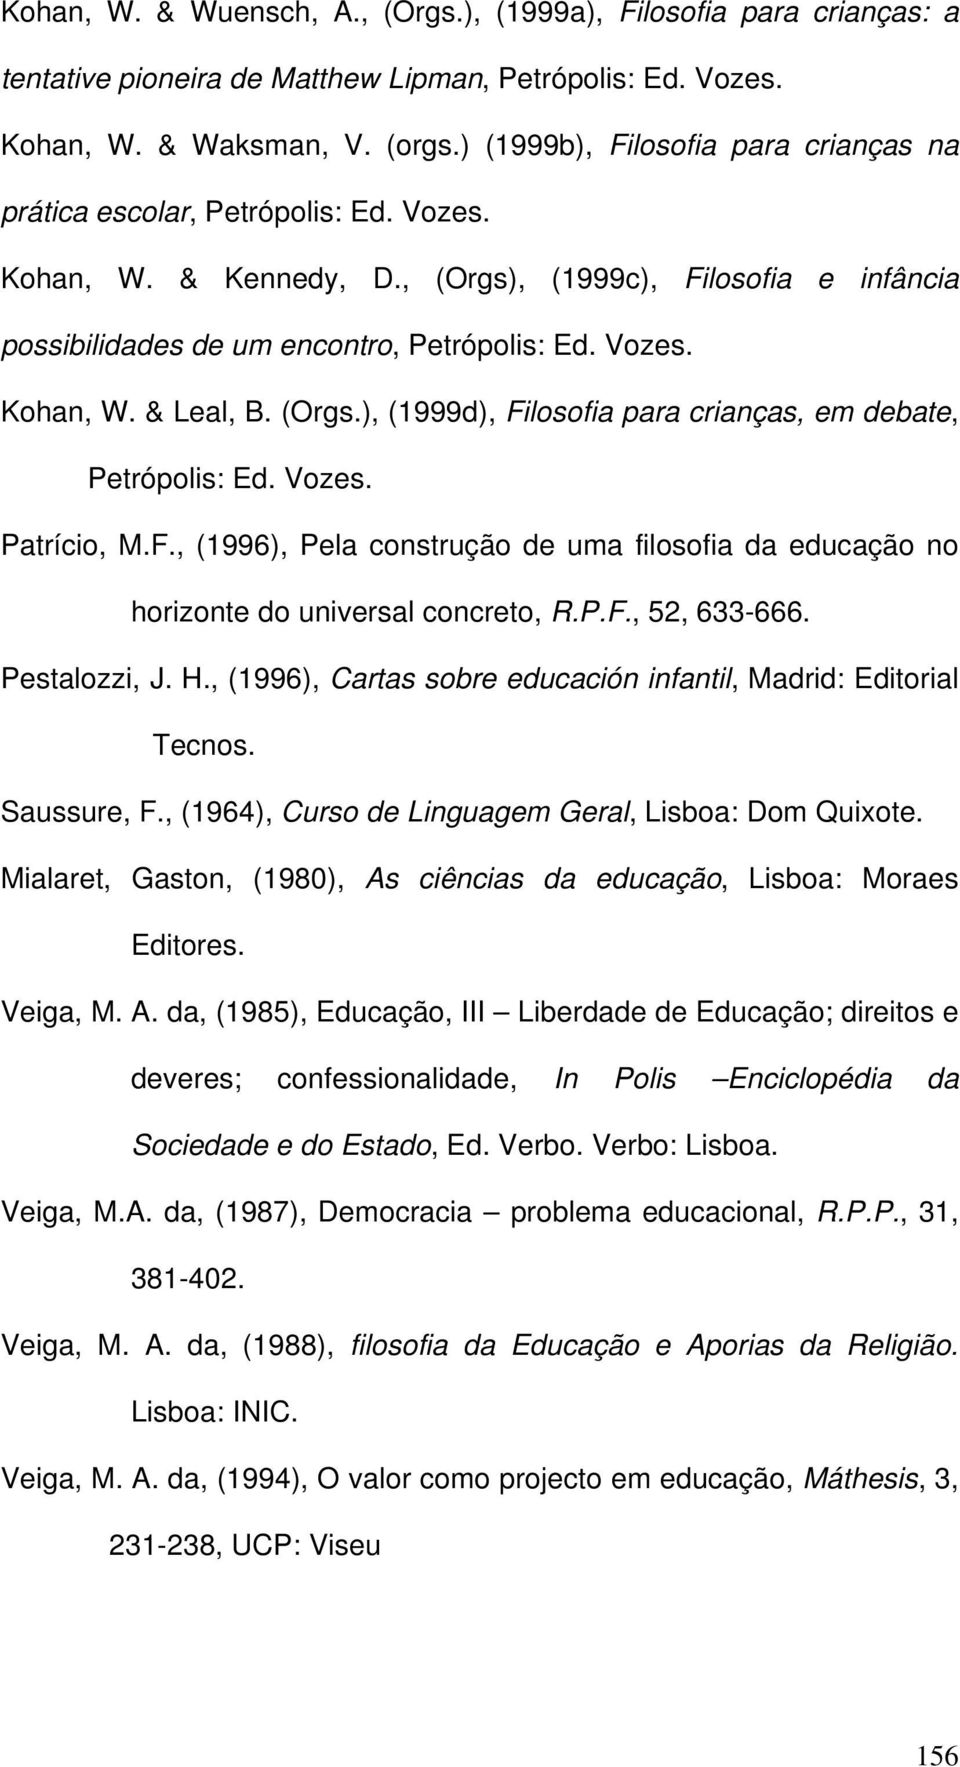 (Orgs.), (1999d), Filosofia para crianças, em debate, Petrópolis: Ed. Vozes. Patrício, M.F., (1996), Pela construção de uma filosofia da educação no horizonte do universal concreto, R.P.F., 52, 633-666.